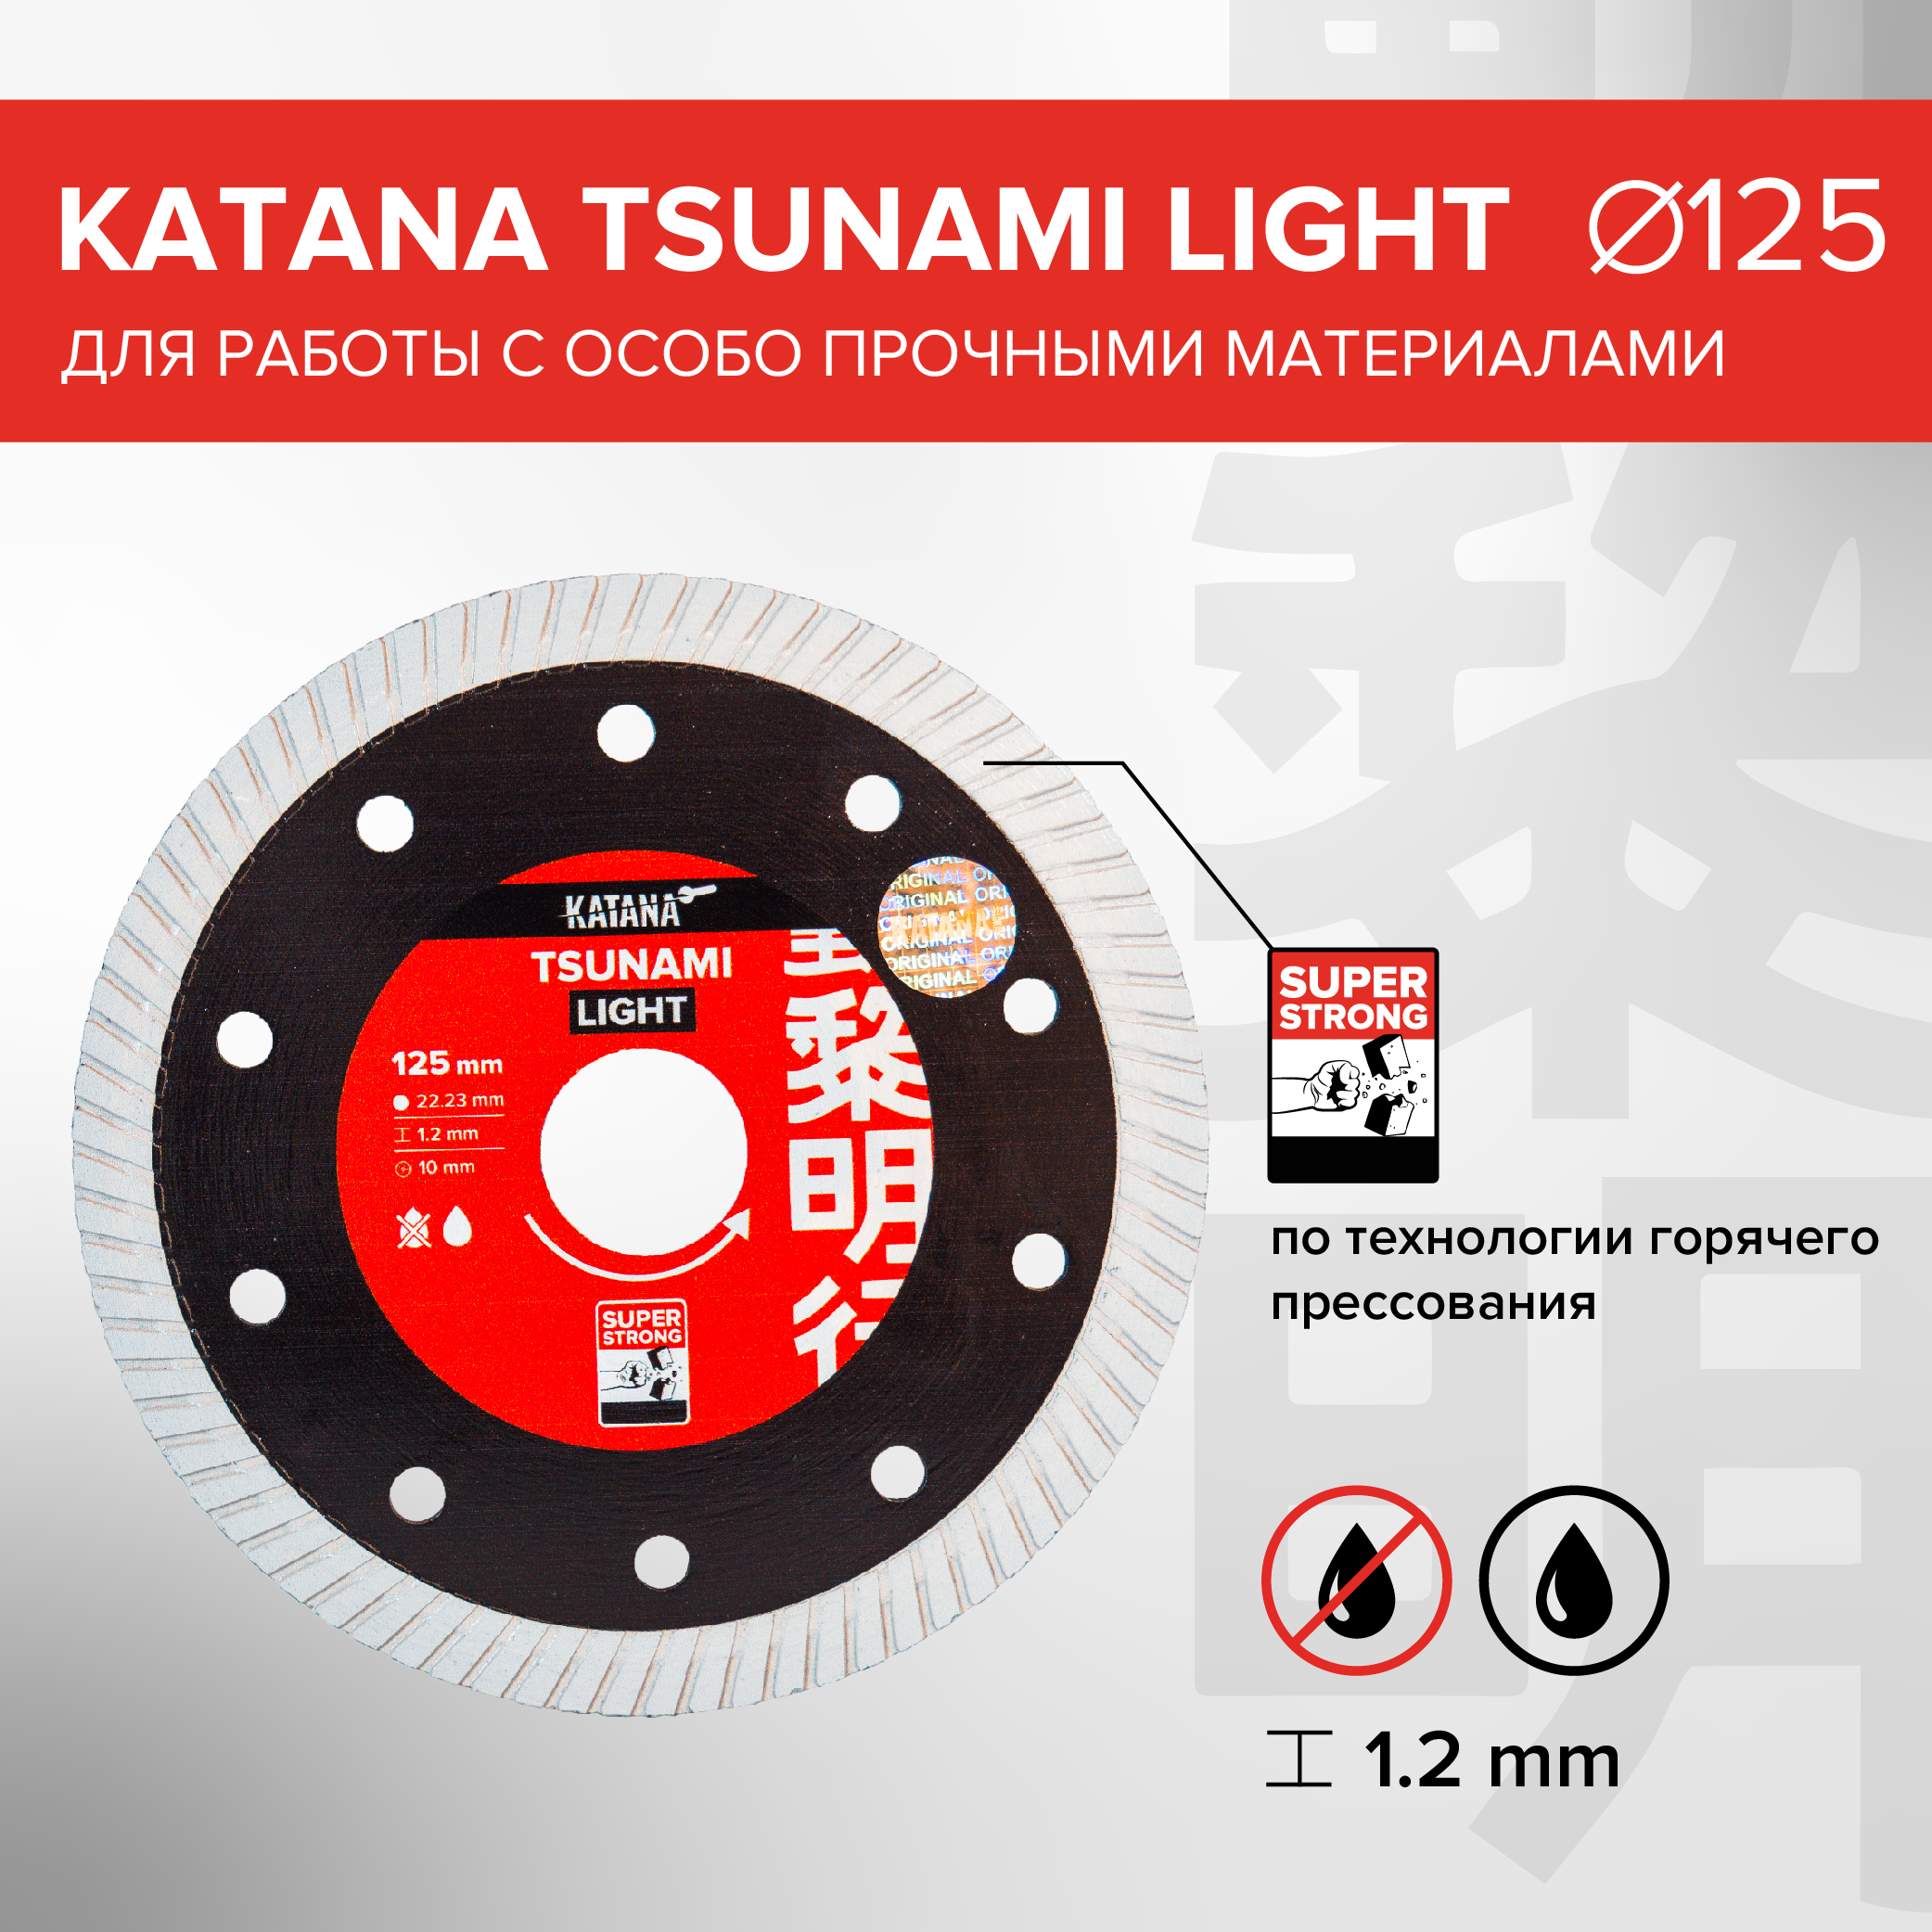 Диск алмазный Katana Tsunami Light 125 x 22.23 x 1.2 мм диск алмазный katana tsunami 125 x 22 23 x 1 2 мм для работы с особо прочными материалами